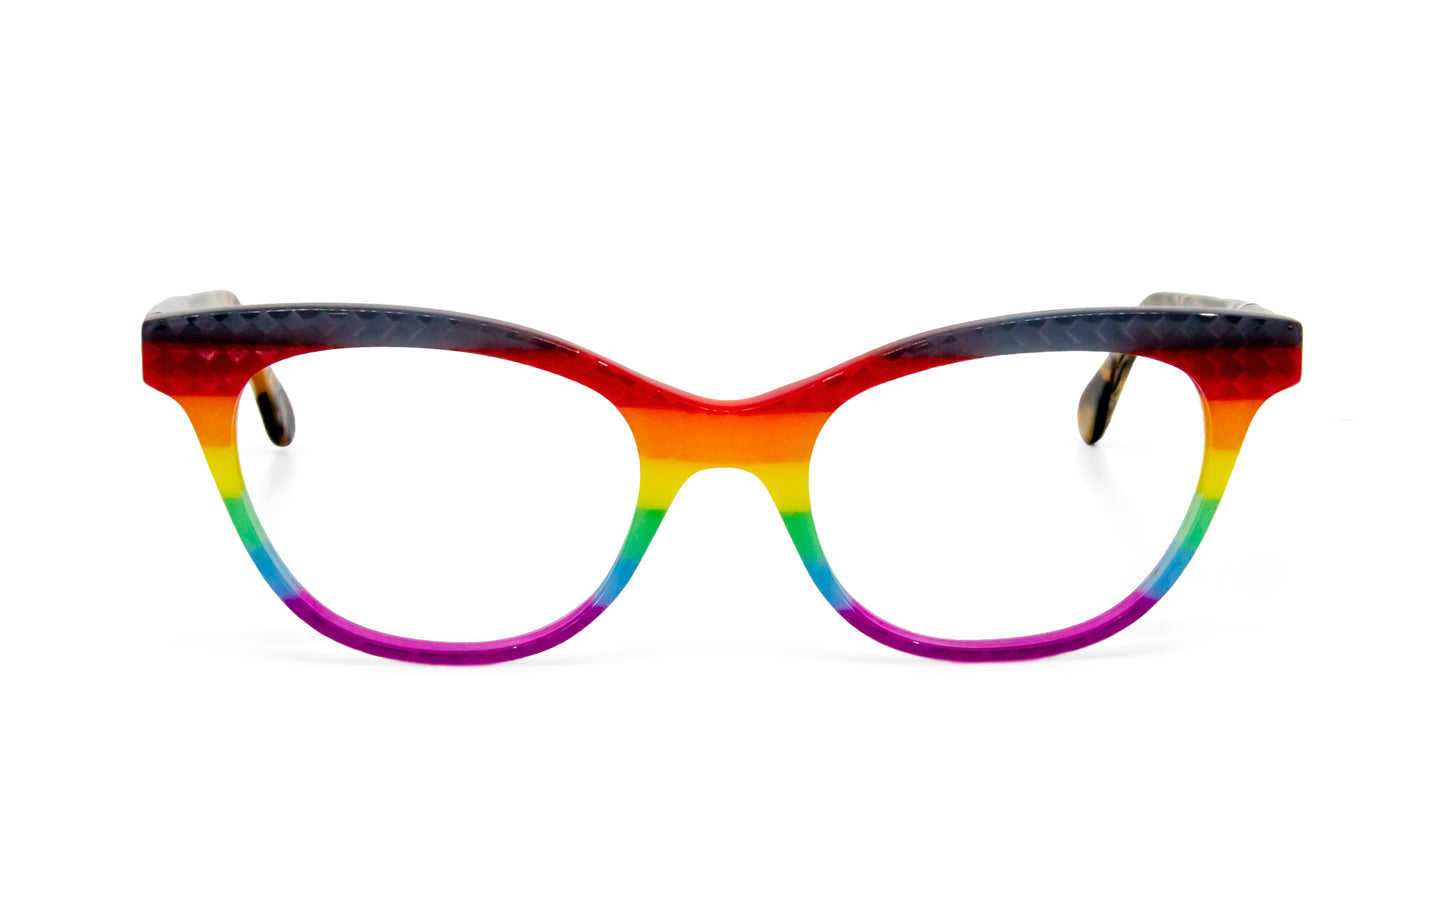 Cateye 2958  by La Bleu Frames Glasses striped